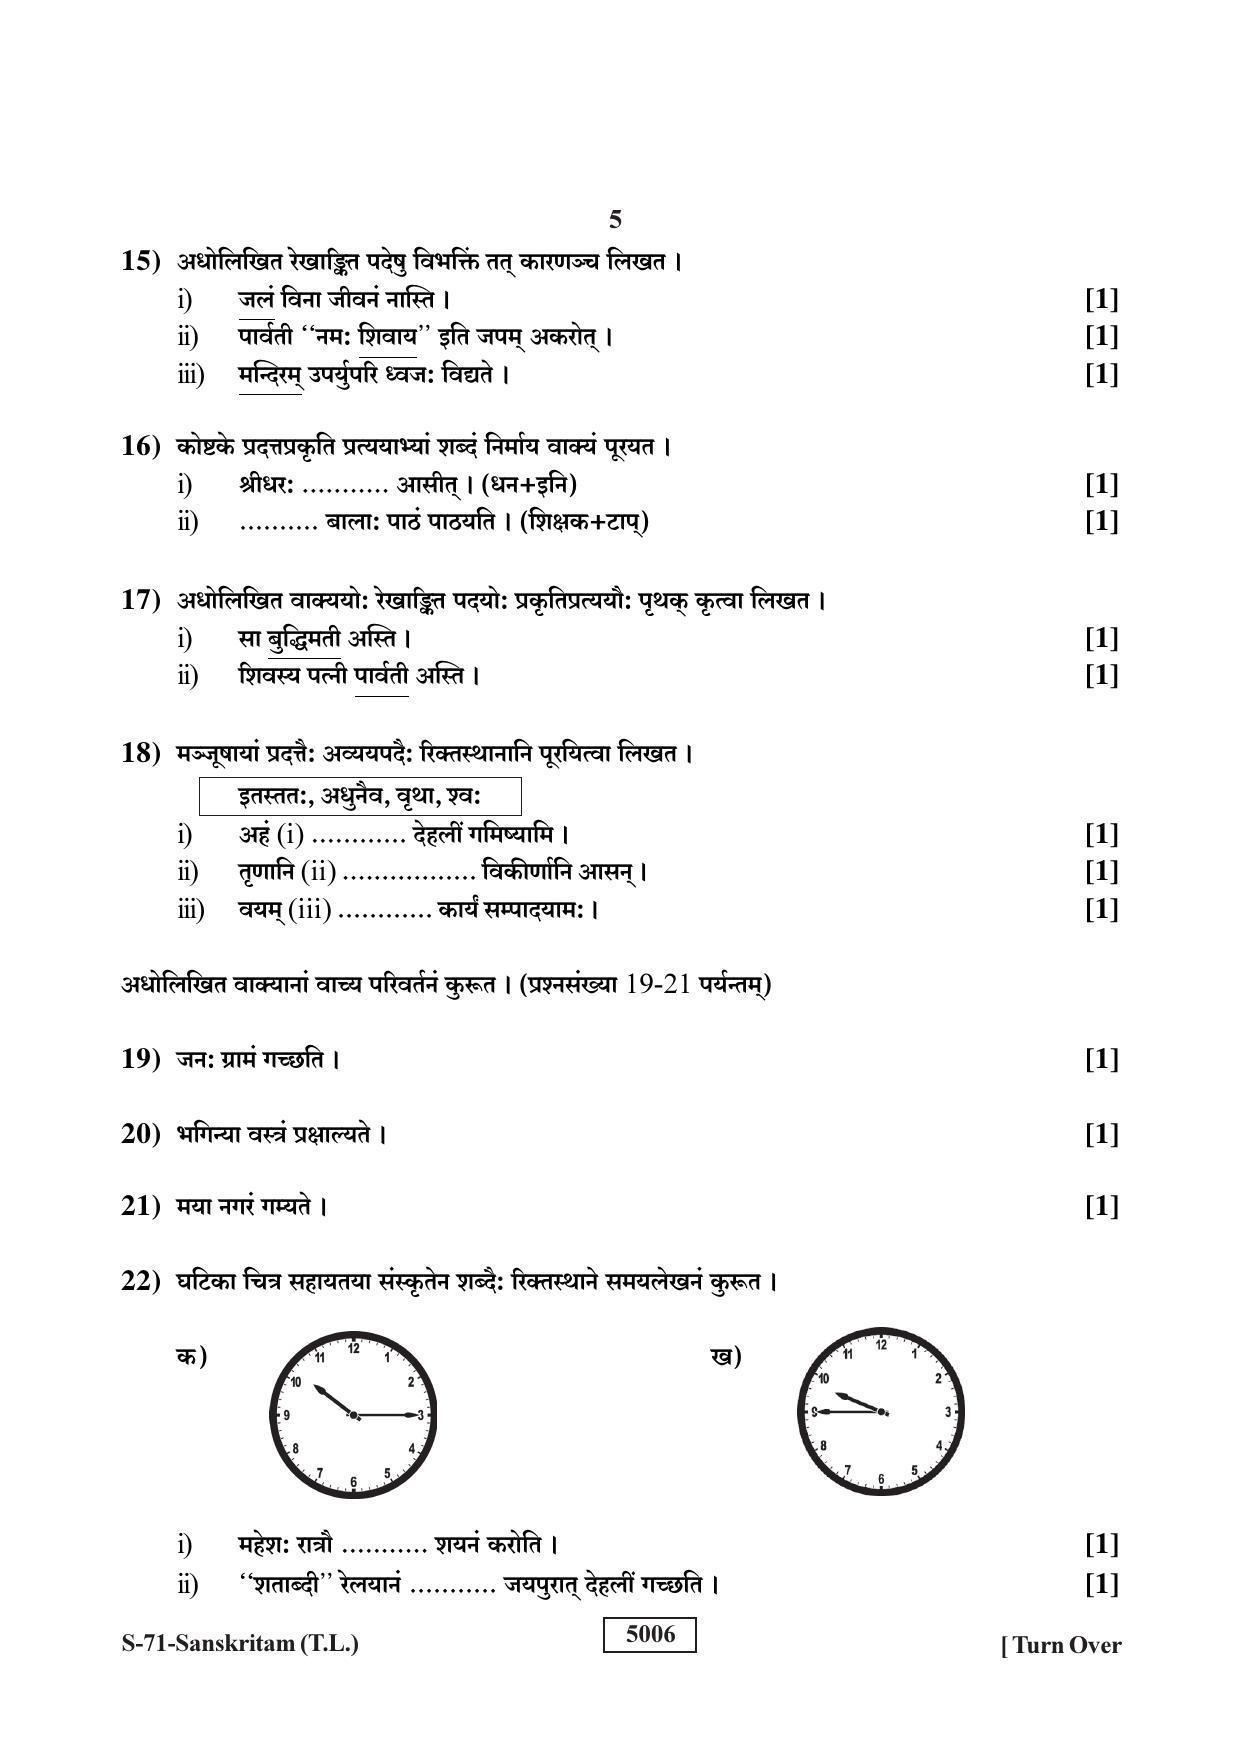 RBSE Class 10 Sanskrit (T.L.) 2019 Question Paper - Page 5